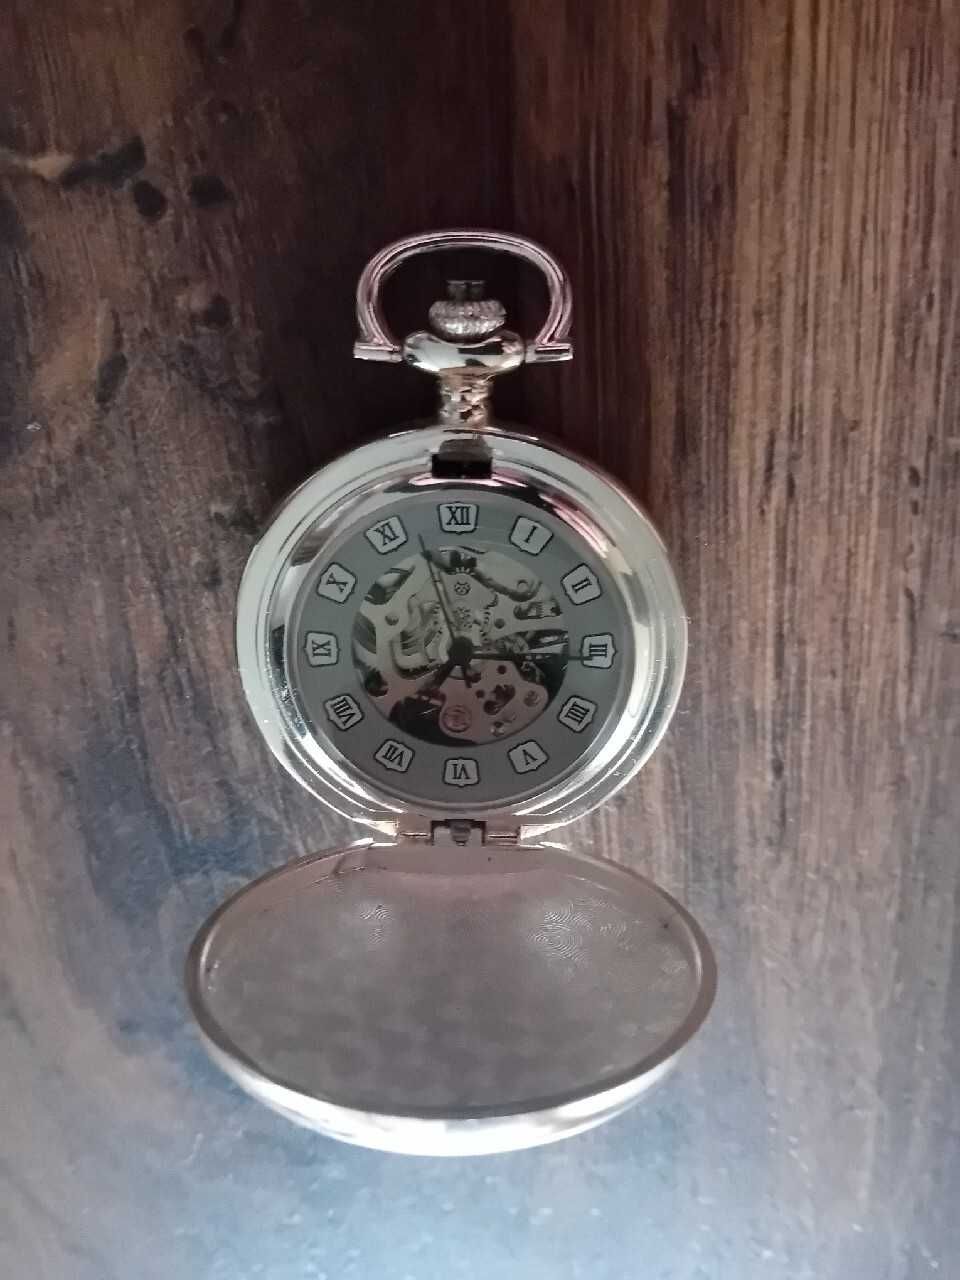 Srebrny zegarek kieszonkowy, Glory of Steam kolekcjonerski